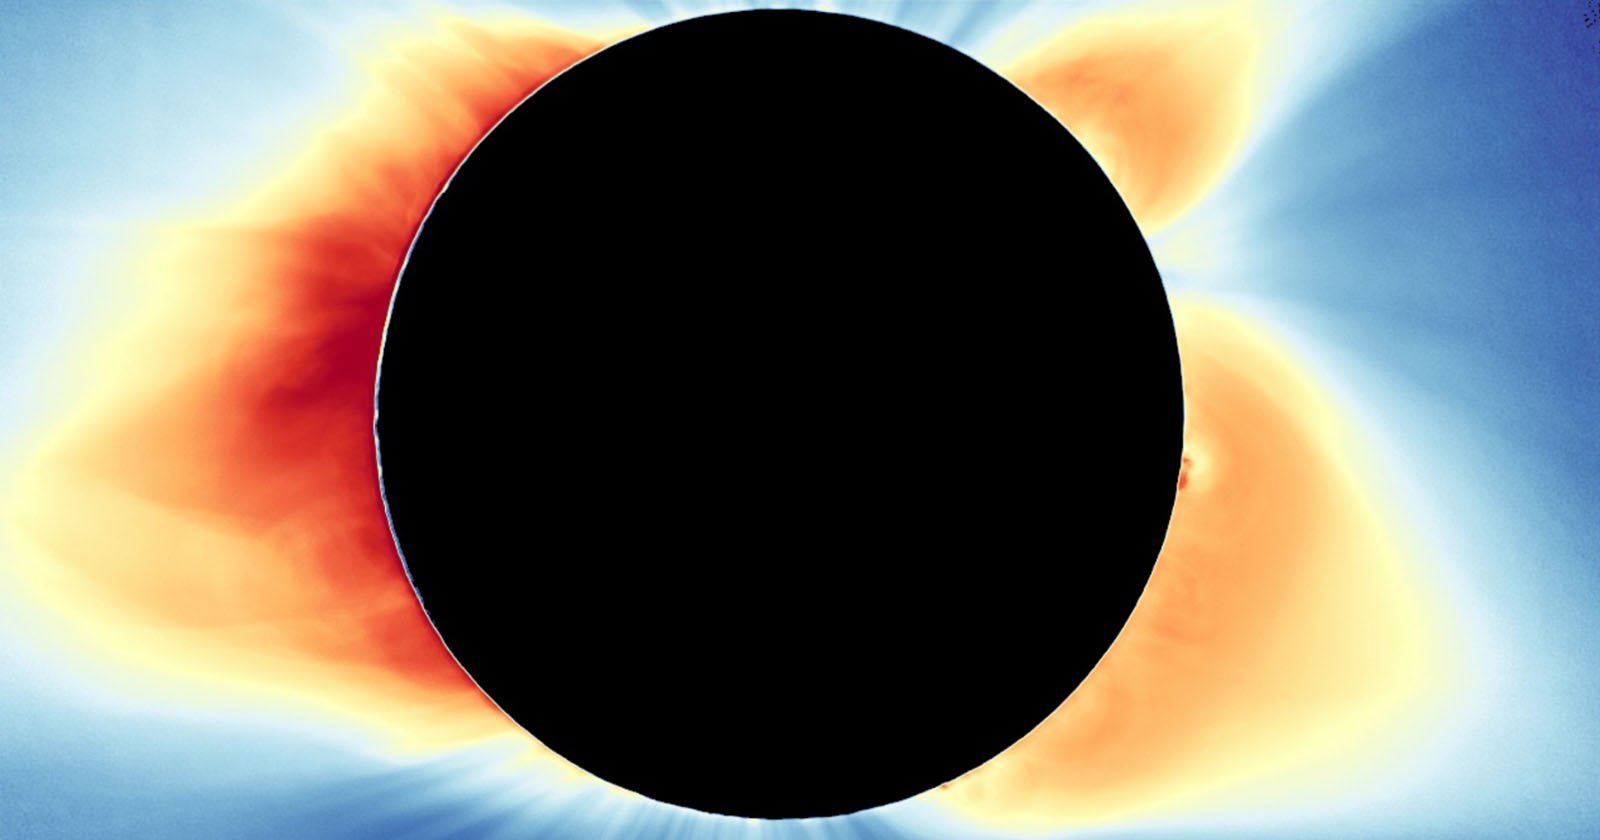  nasa funds experiments ahead 2024 total solar eclipse 